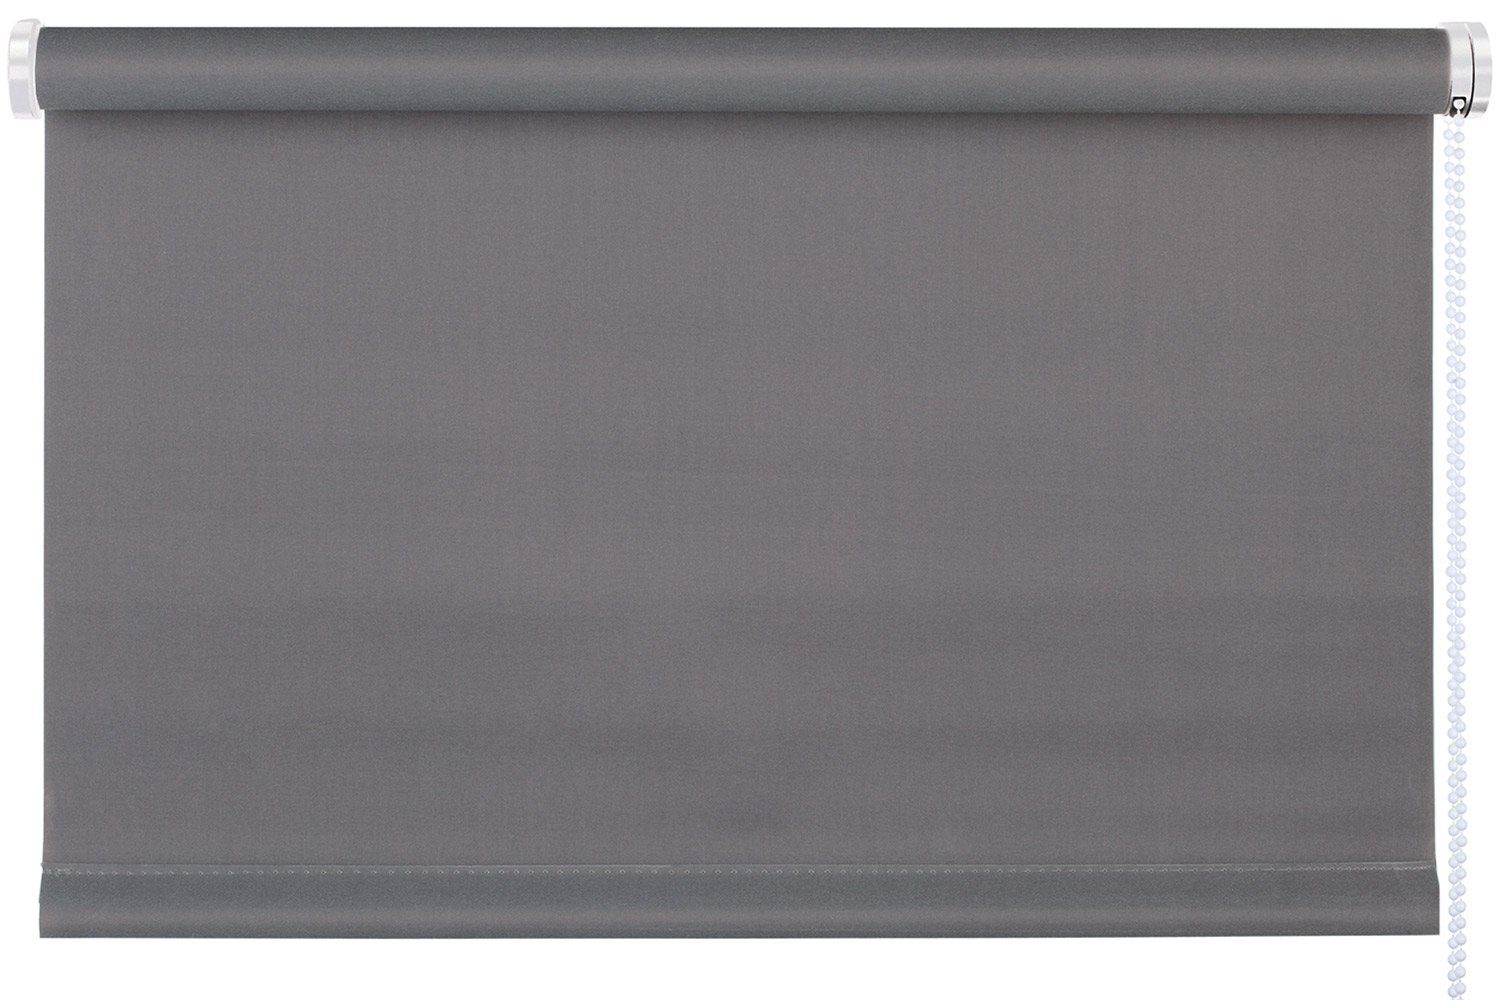 Rollo TREND, Design Rollo, Grau, B 120 x H 150 cm, mydeco, blickdicht, ohne Bohren, Klemmfix